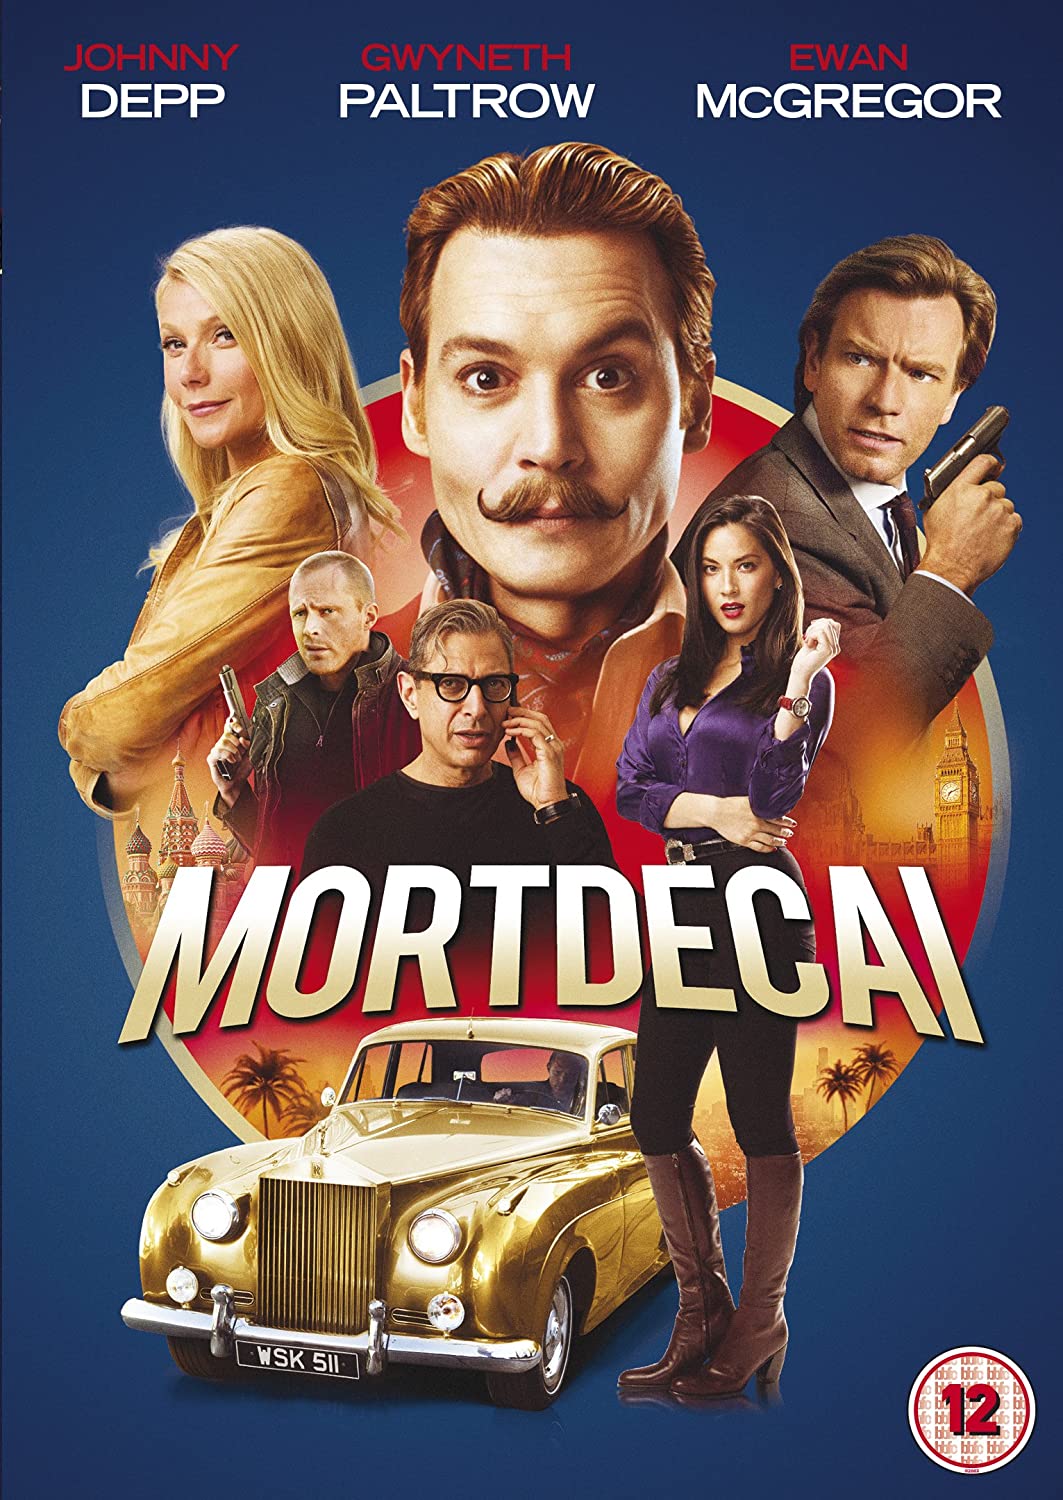 Mortdecai - Comedy [2015] [DVD]